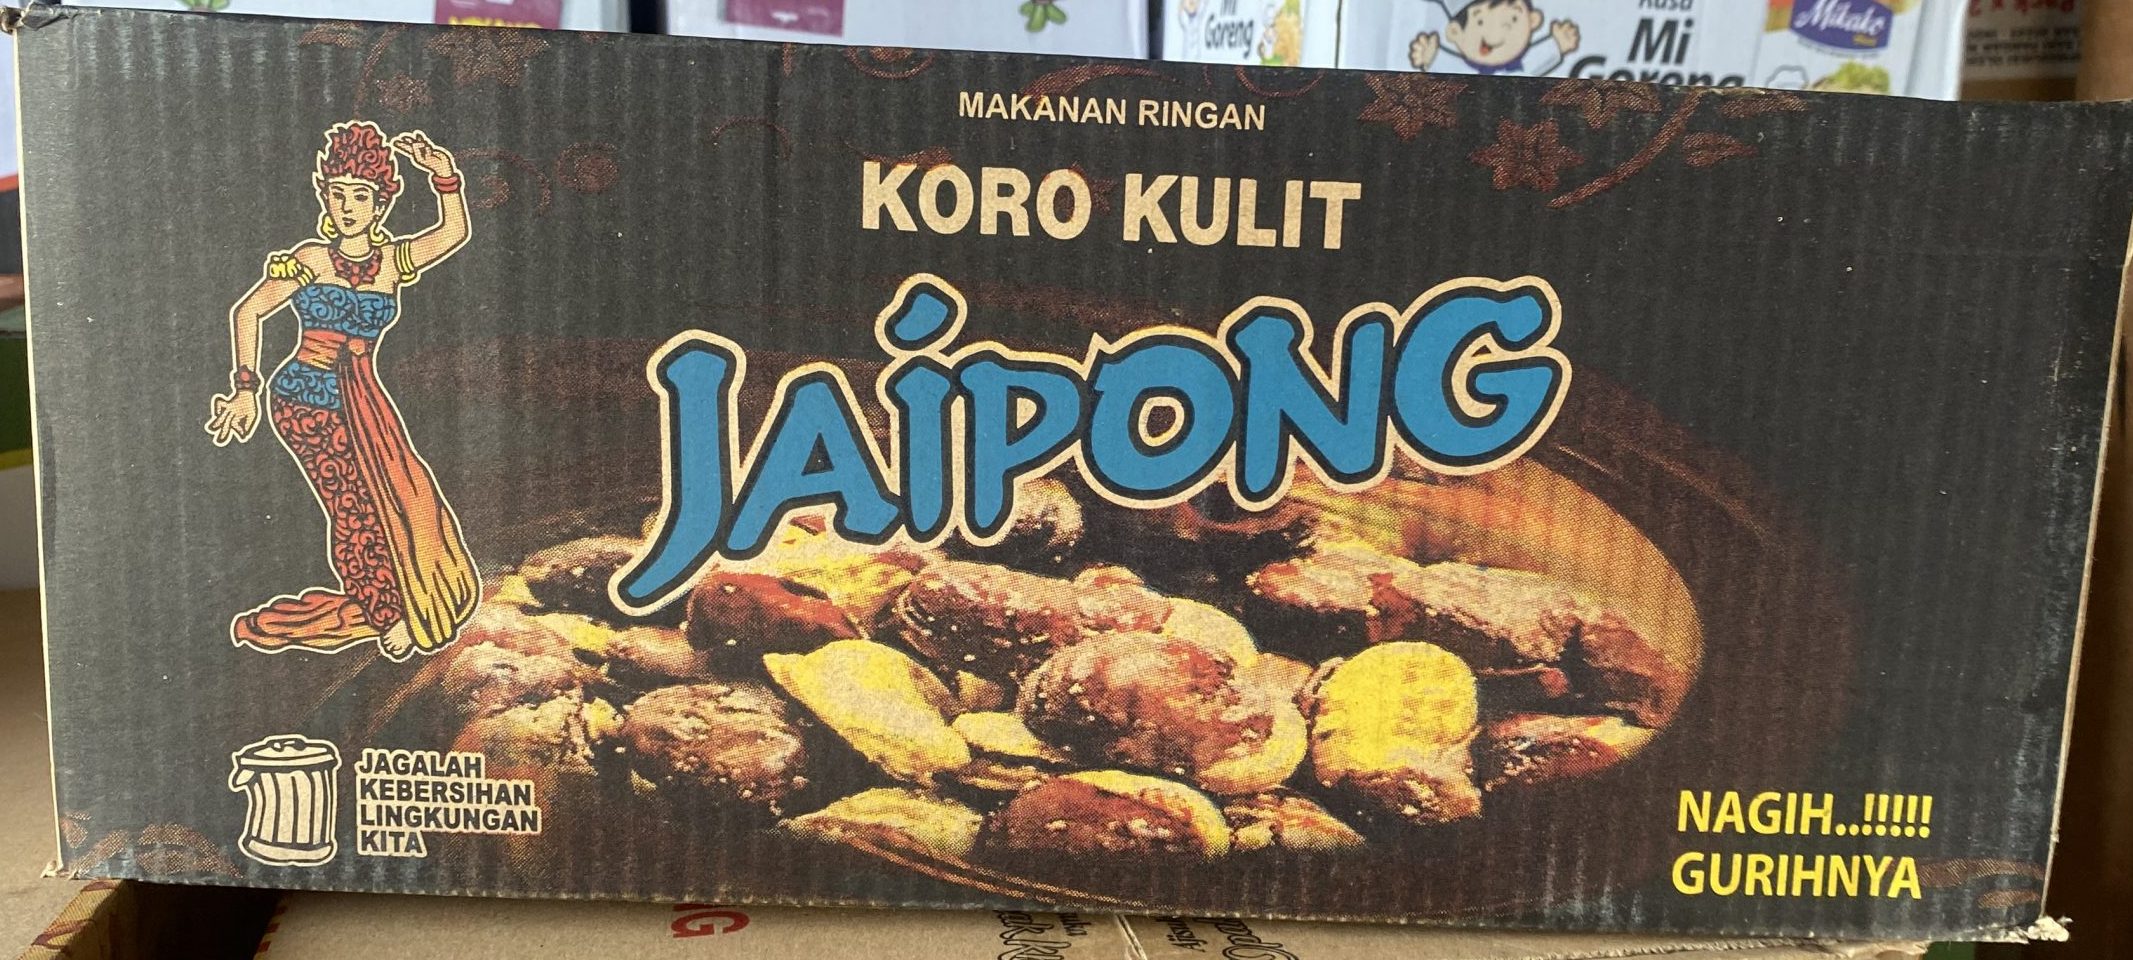 Jaipong Koro